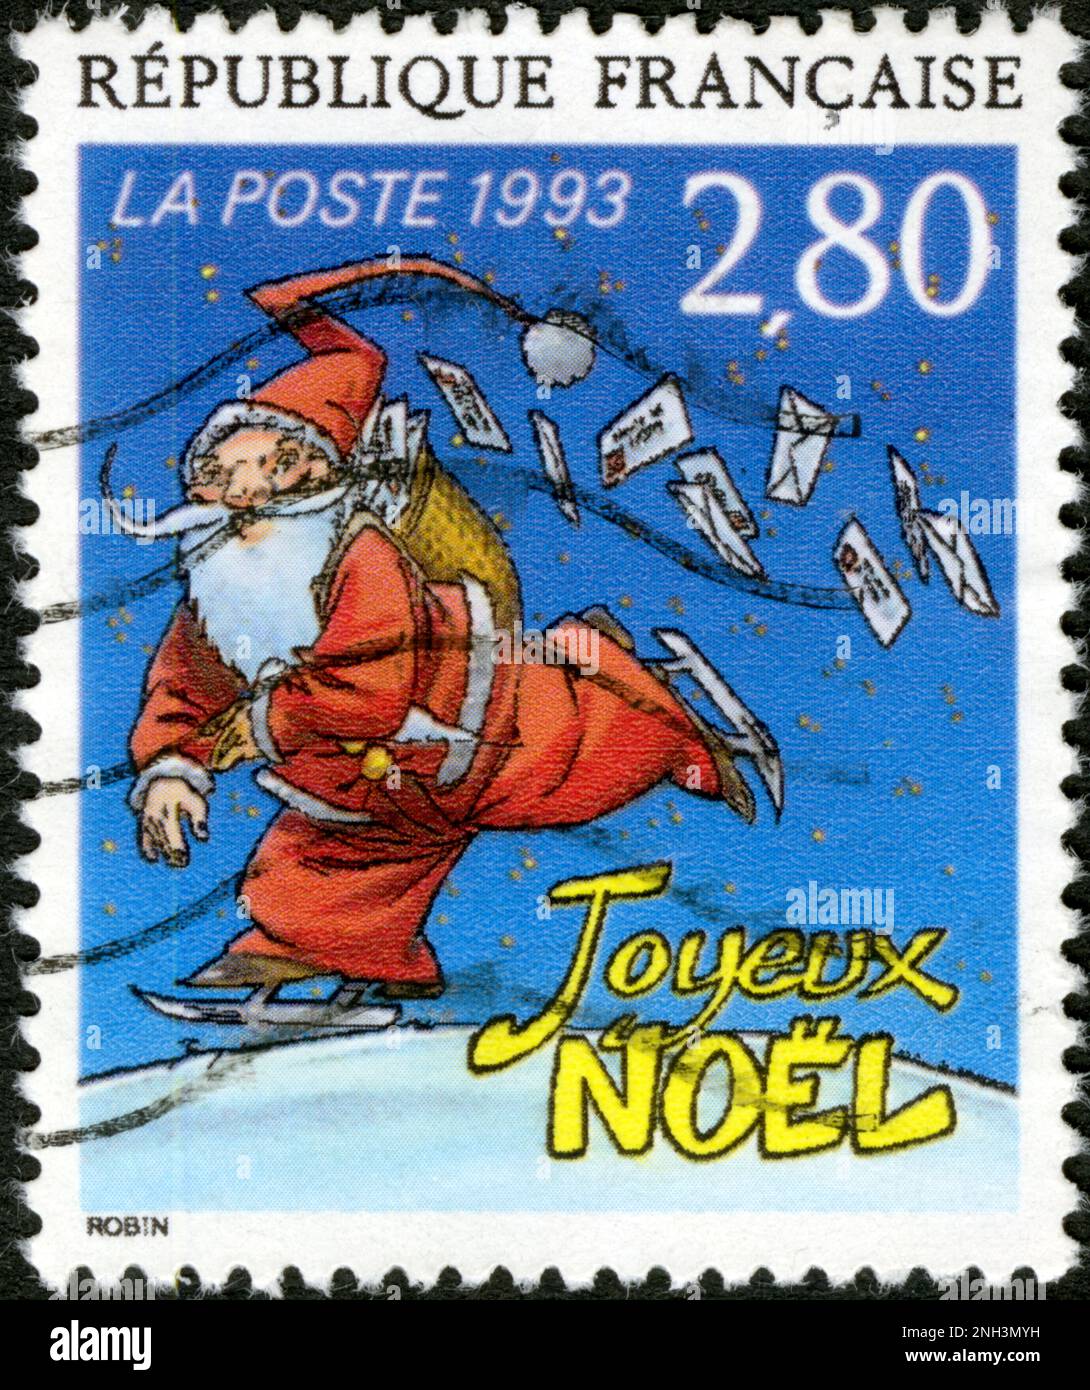 TIMBRE OBLITÉRÉ JOYEUX NOEL. RÉPUBLIQUE FRENCH. LA POSTE 1993. 2,80 Foto Stock